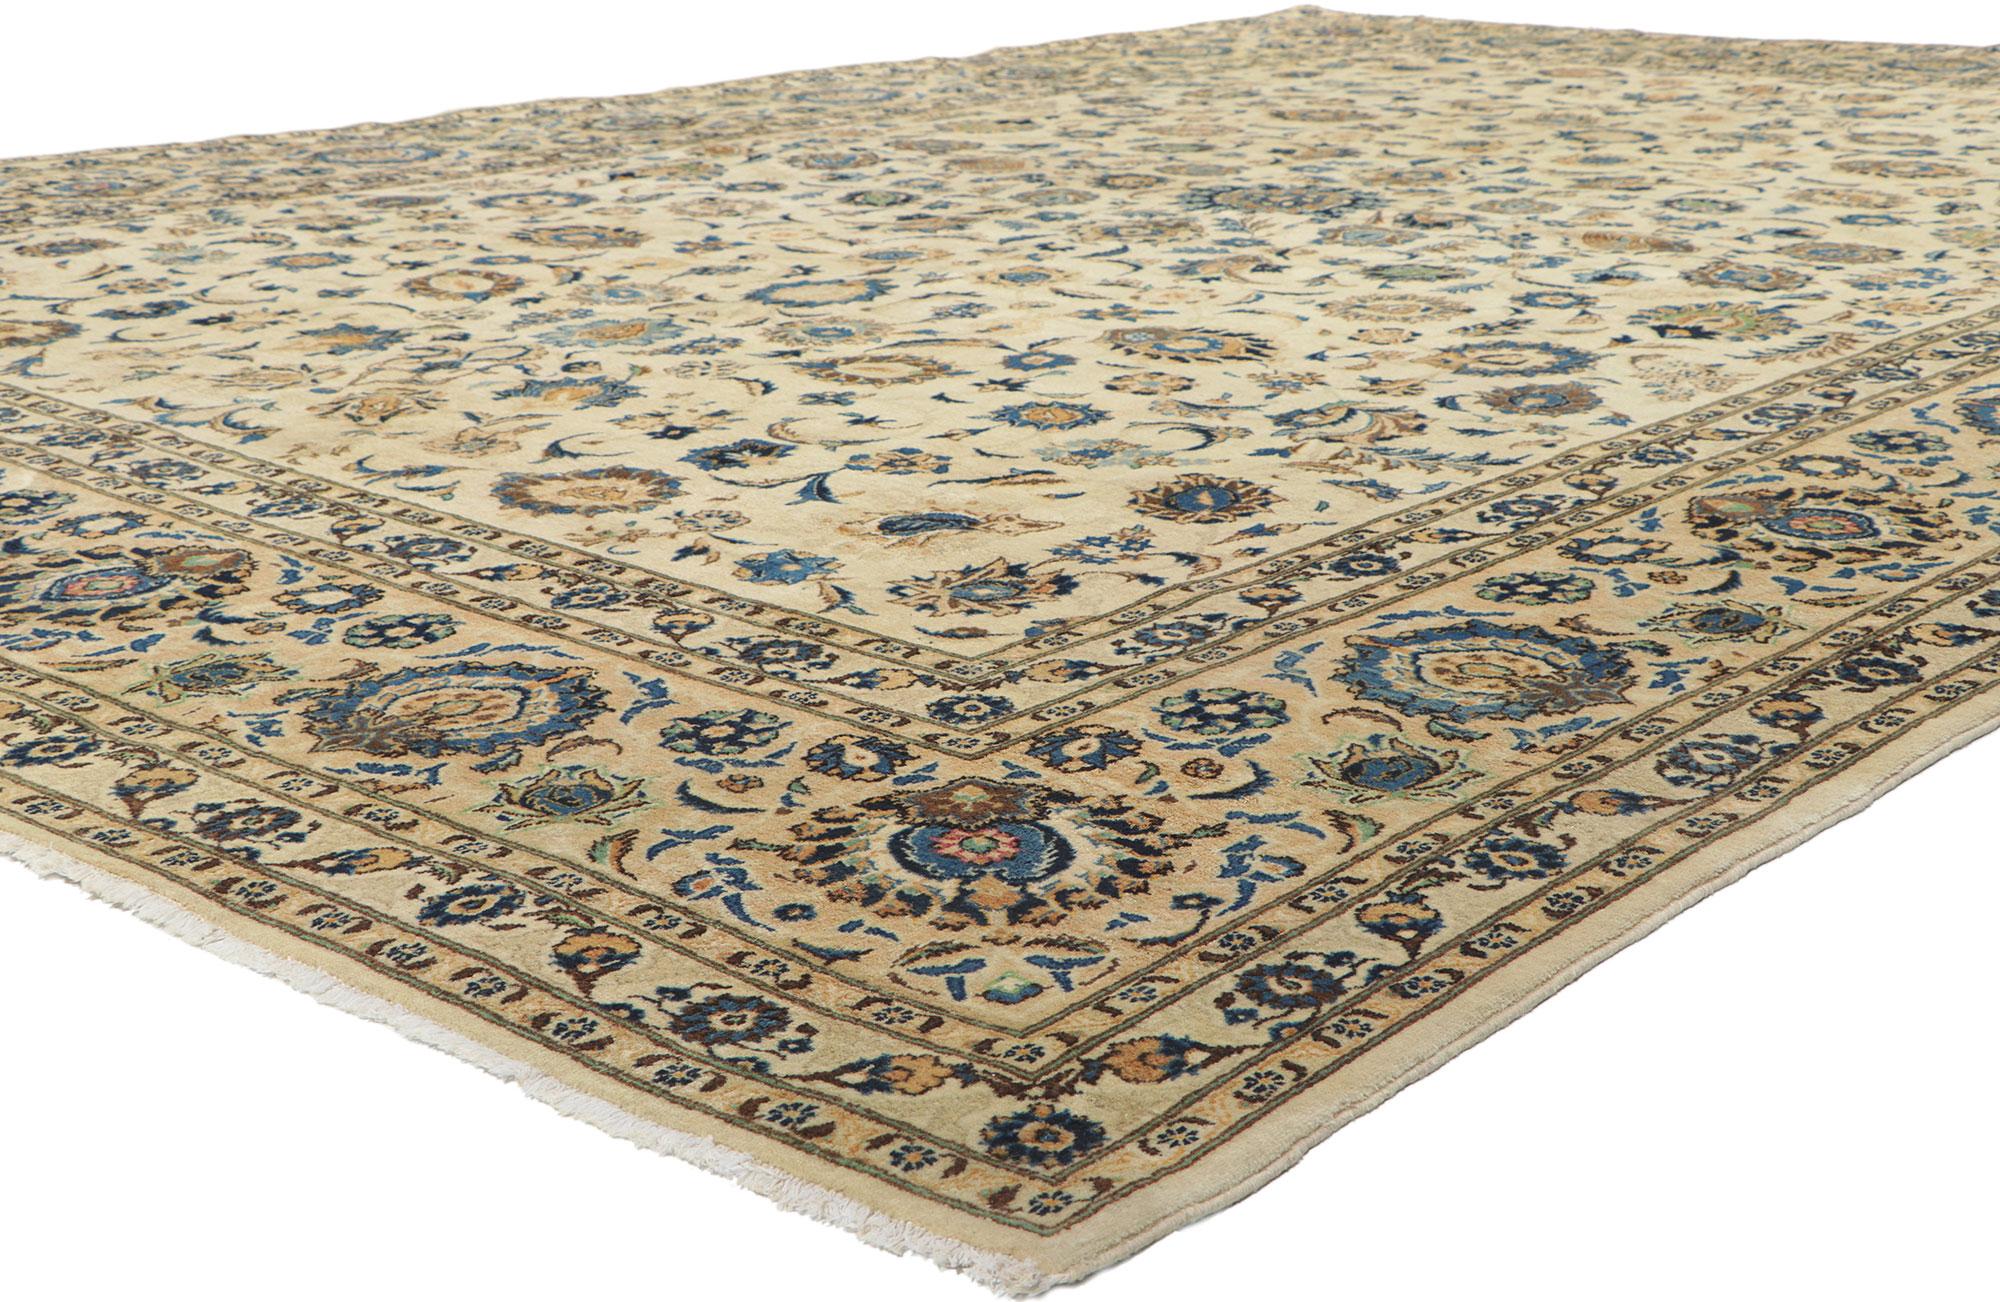 77738 Vintage Persian Nain Rug, 10'04 x 14'11. Dieser handgeknüpfte persische Nain-Teppich aus Wolle im Vintage-Stil besticht durch seinen zeitlosen Stil und seine unglaubliche Detailtreue und Textur. Das verschnörkelte botanische Design und die